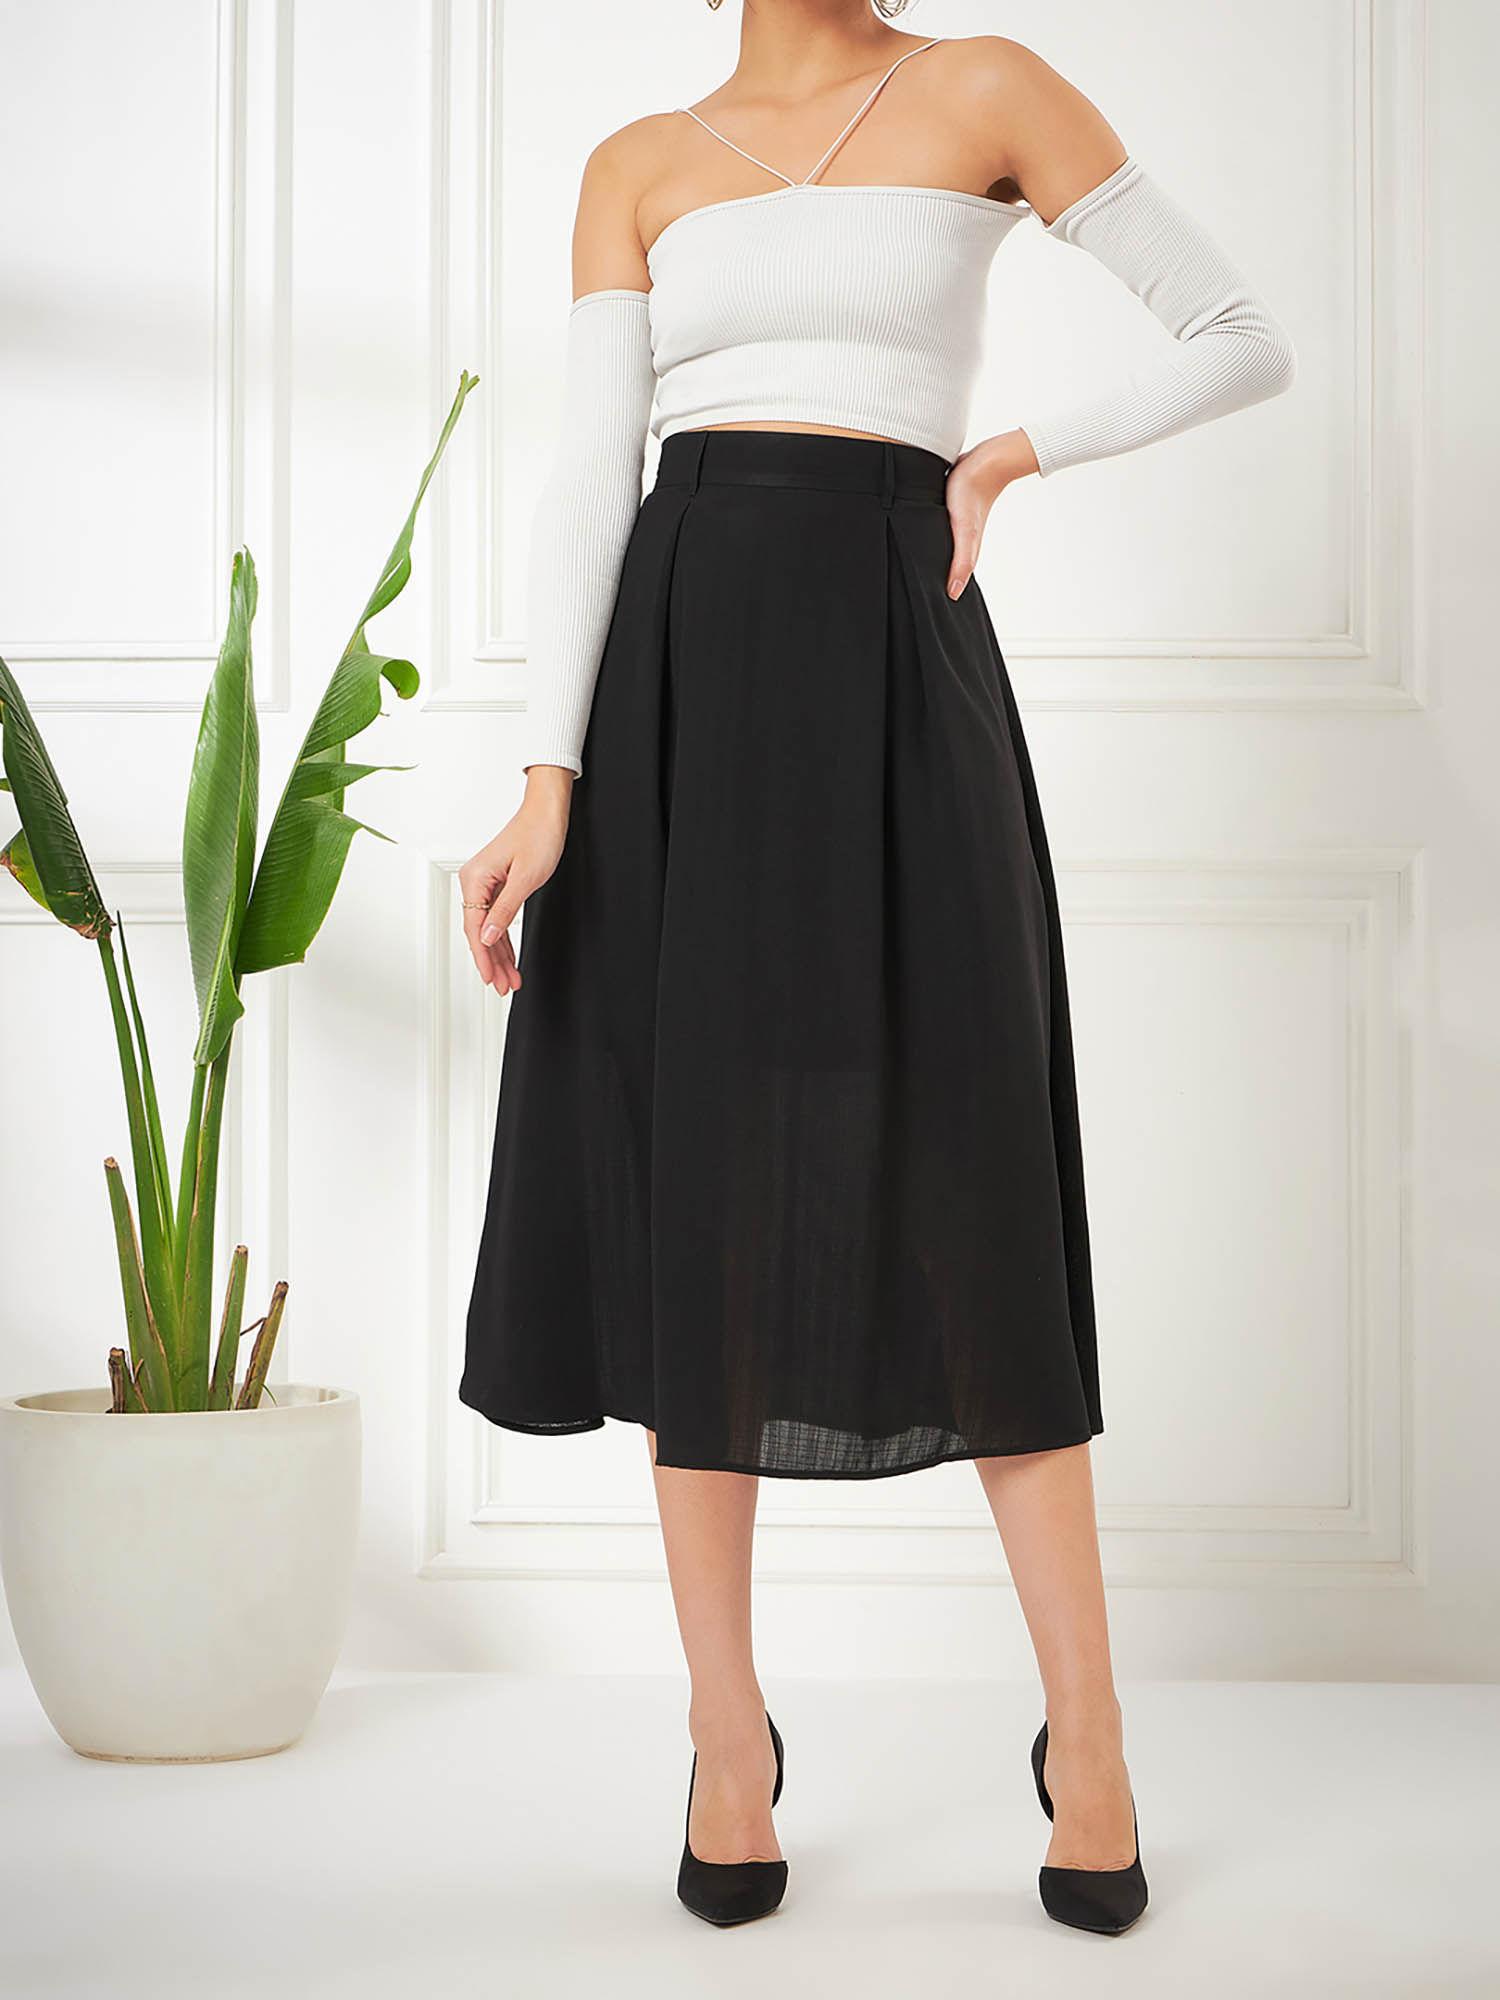 womens black formal skirt